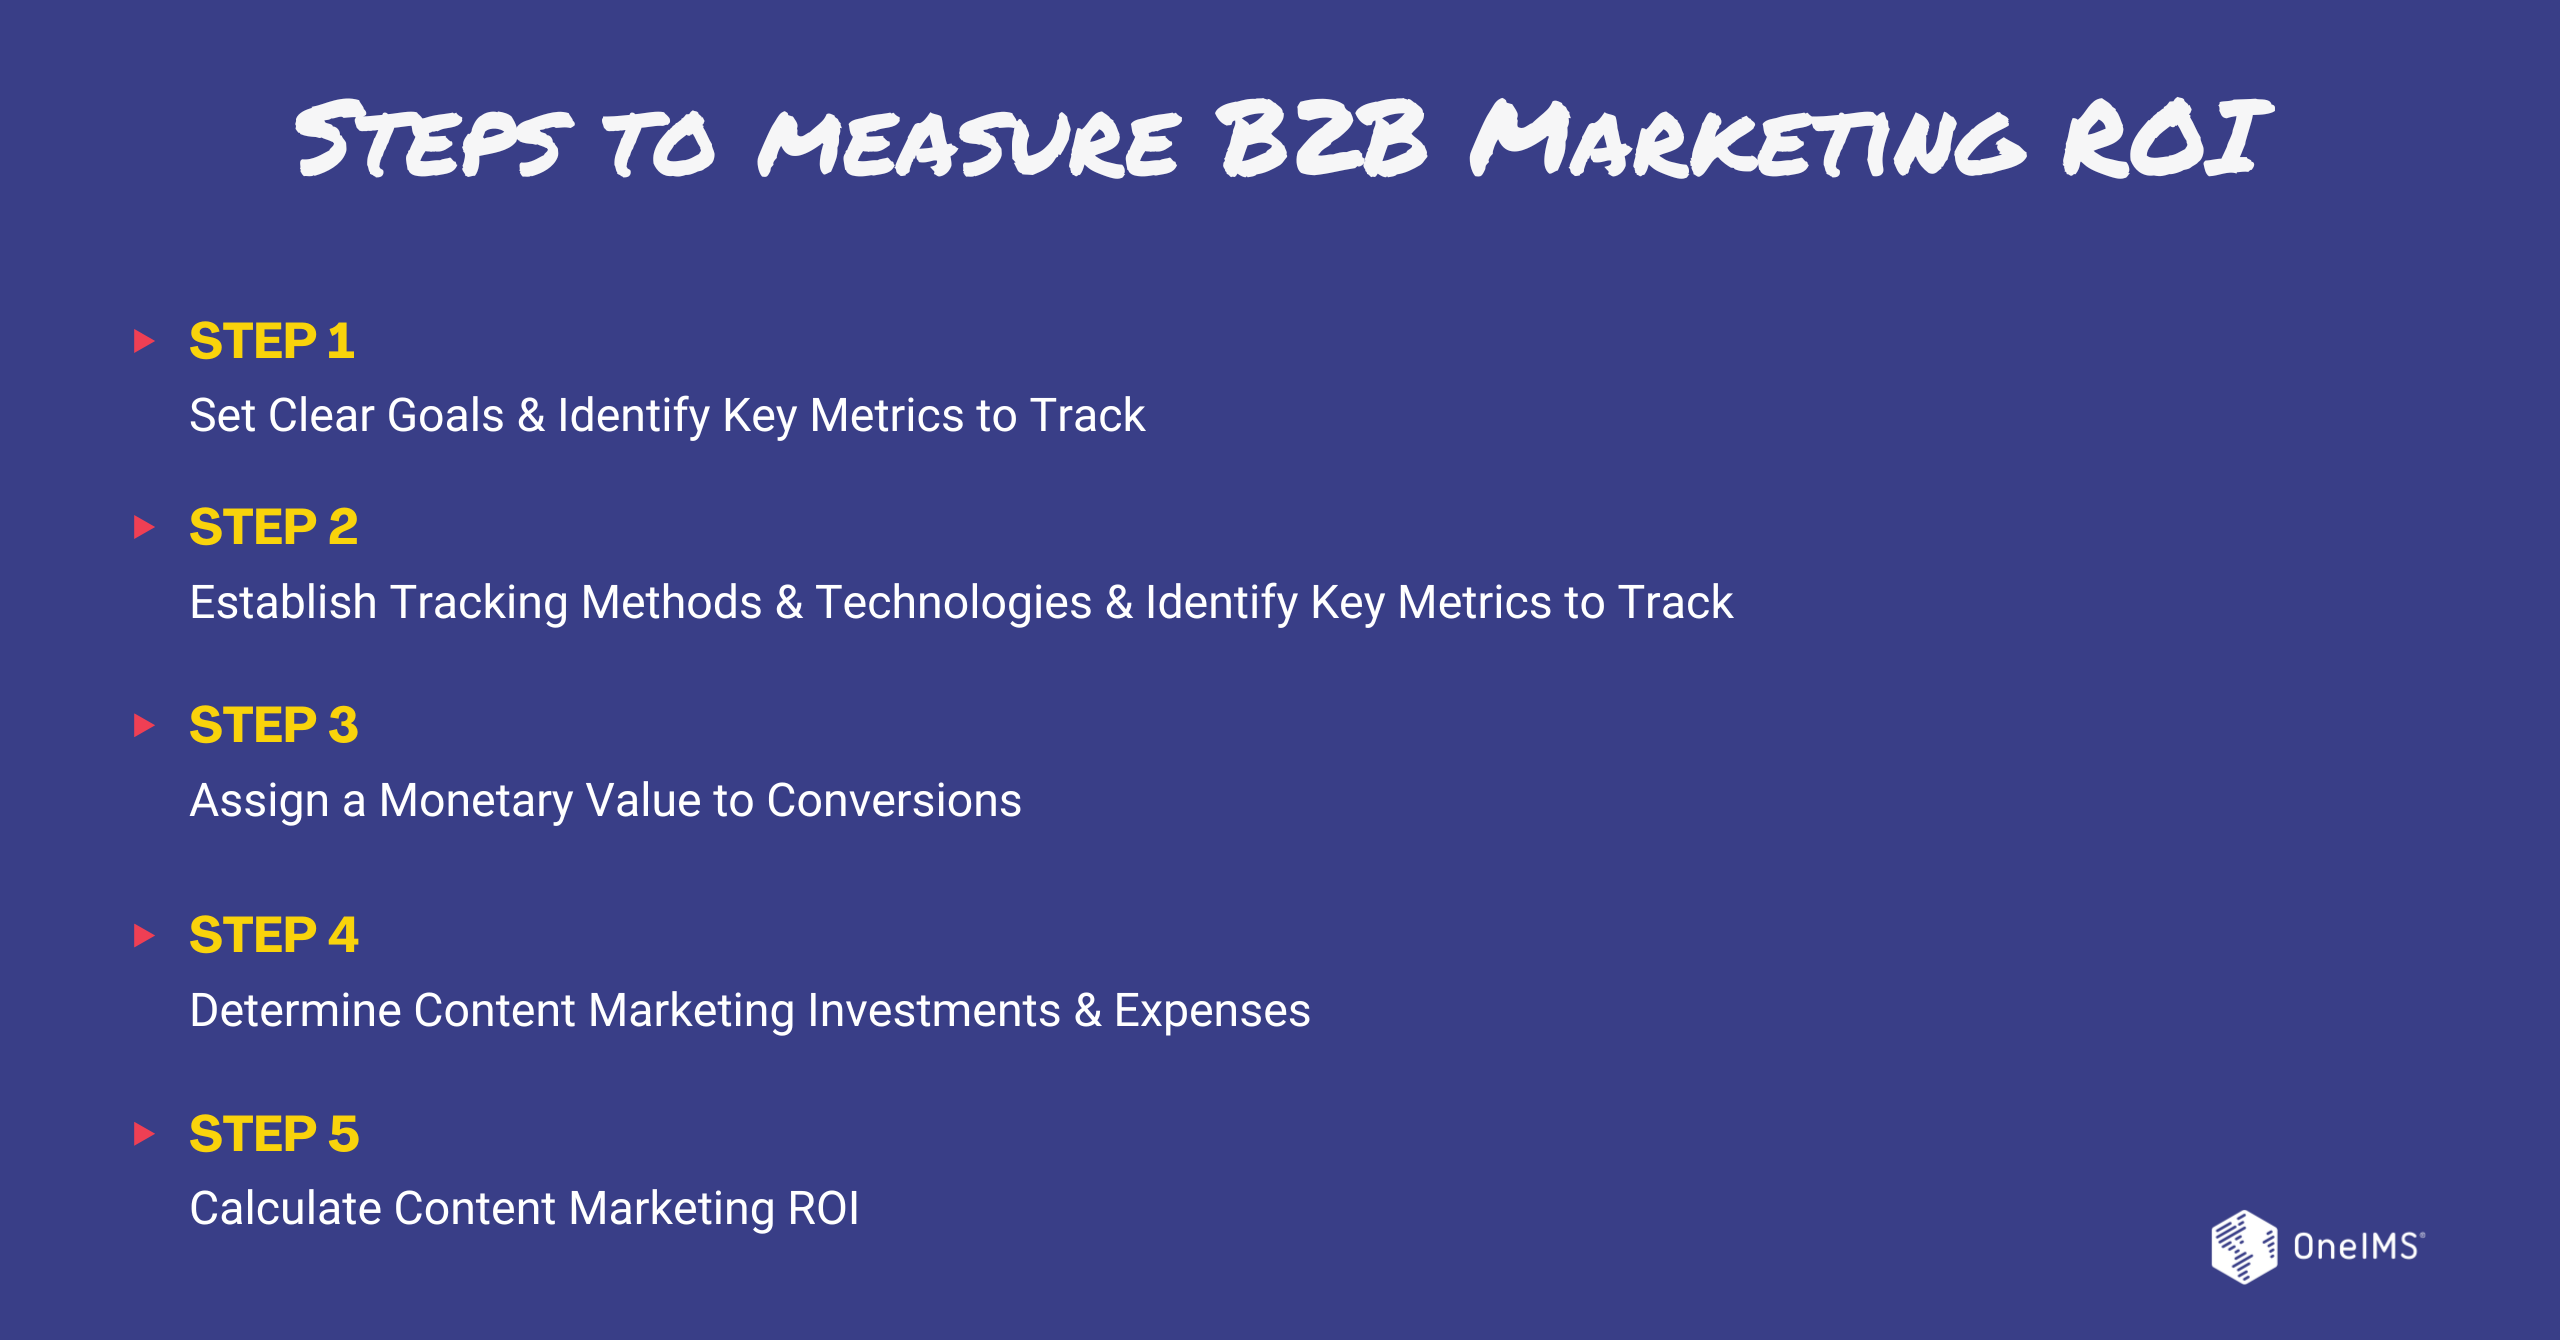 Steps to Measure B2B Marketing ROI